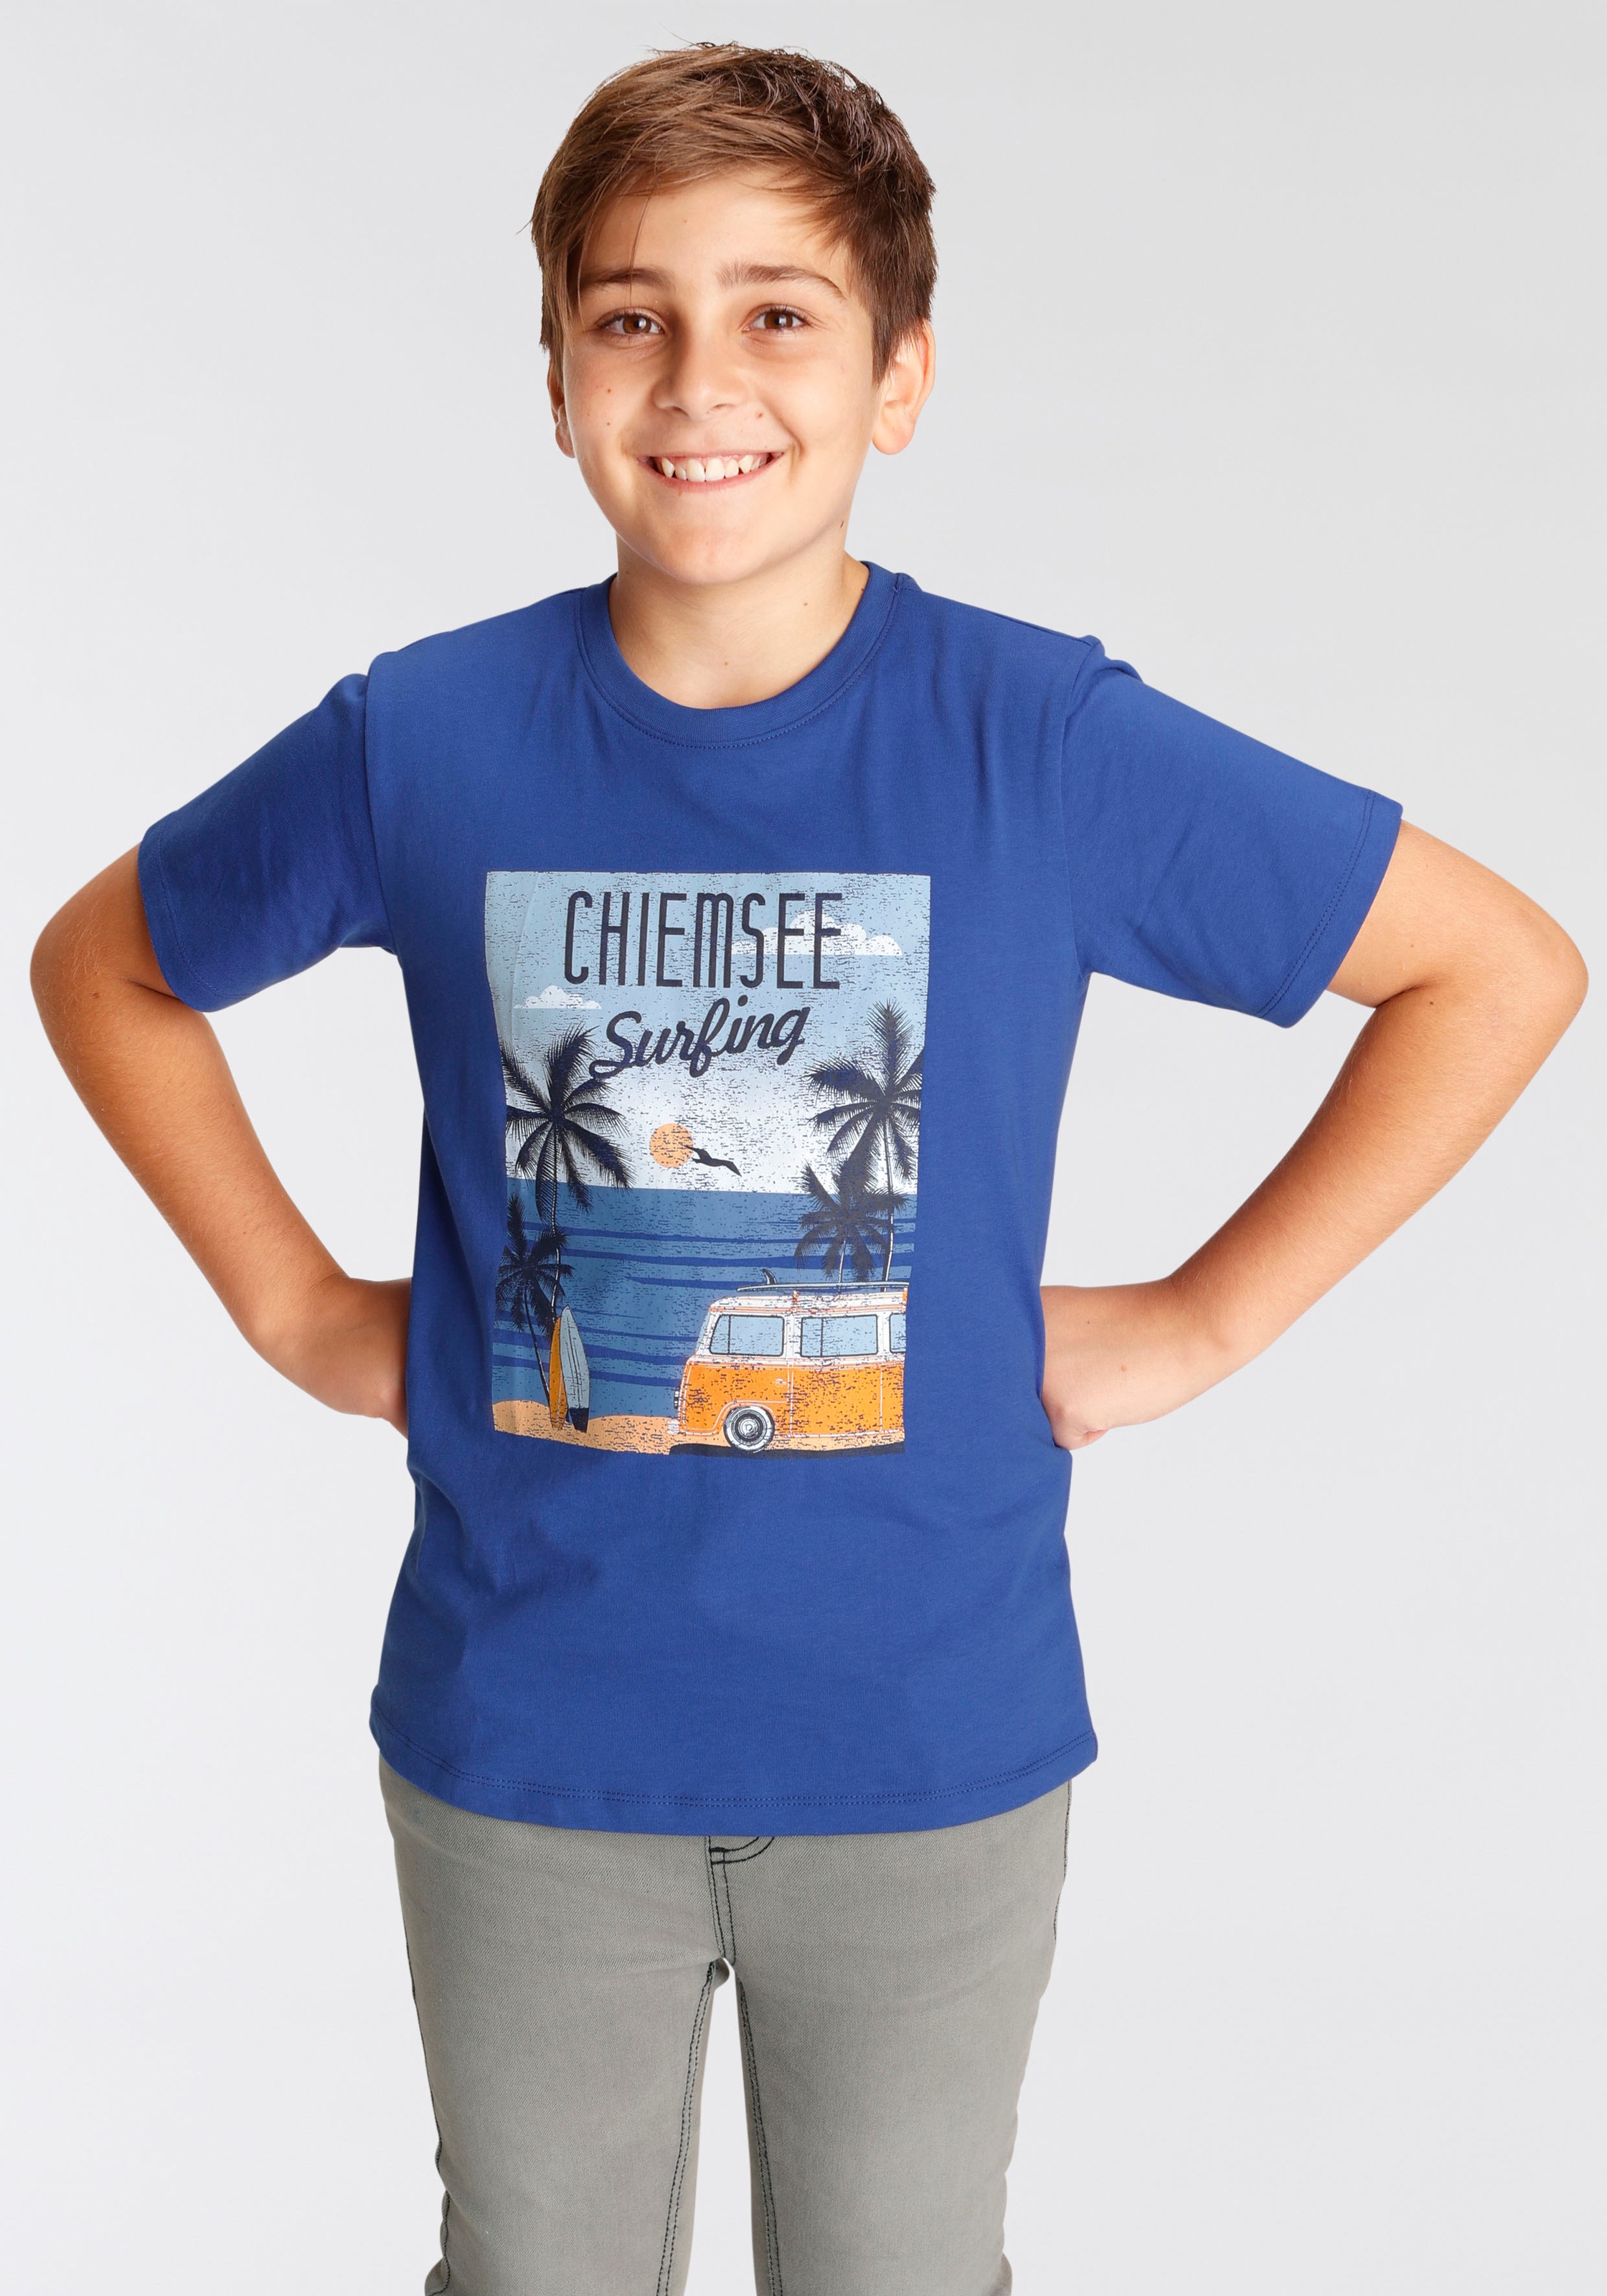 ✌ Acheter T-Shirt ligne Chiemsee en »Surfing«